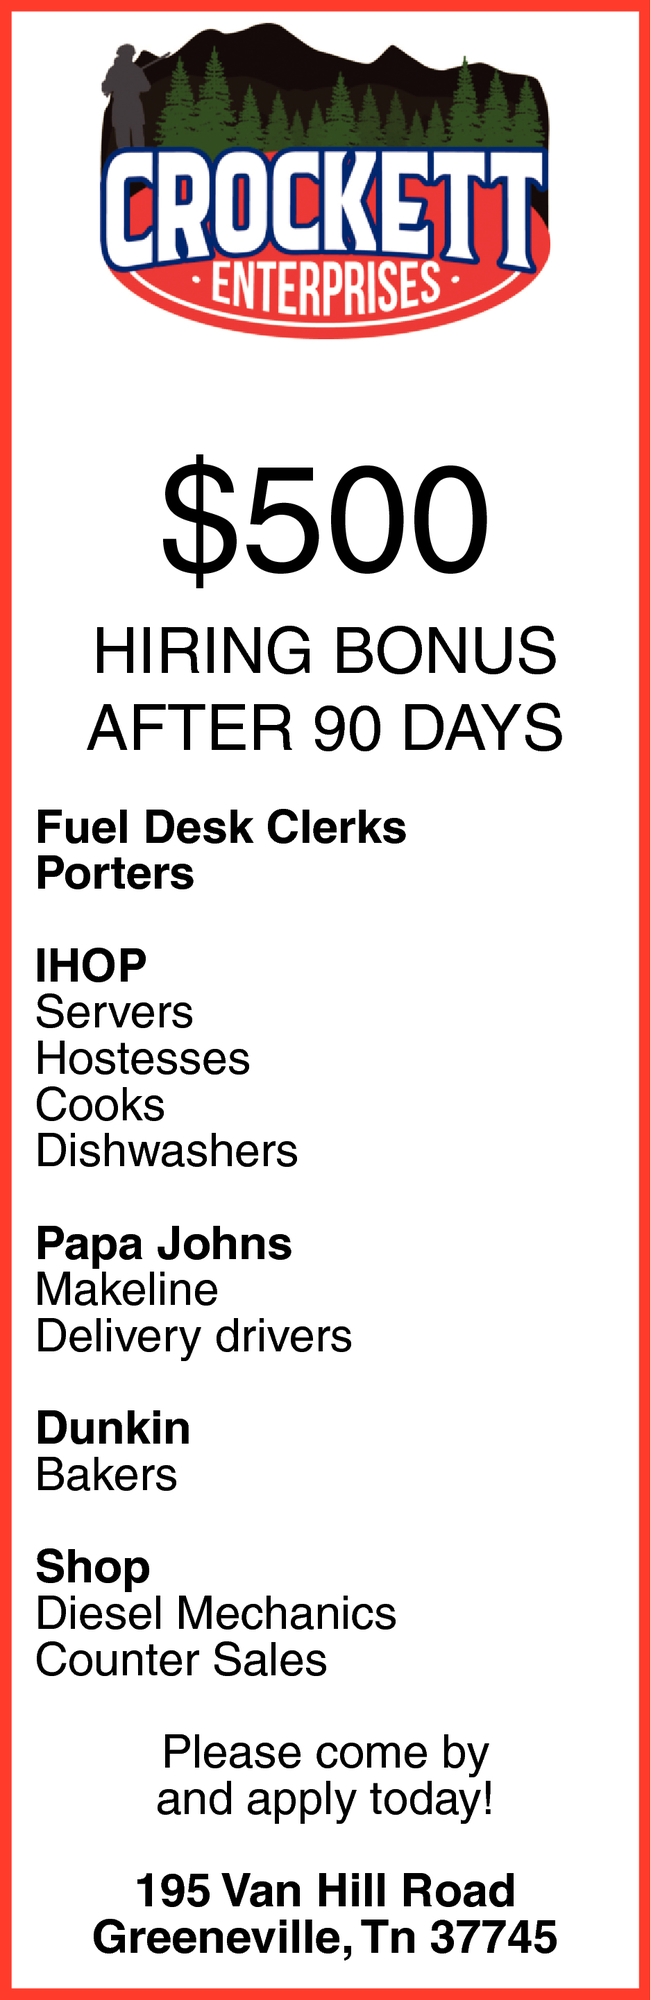 Fuel Desk Clerks Porters